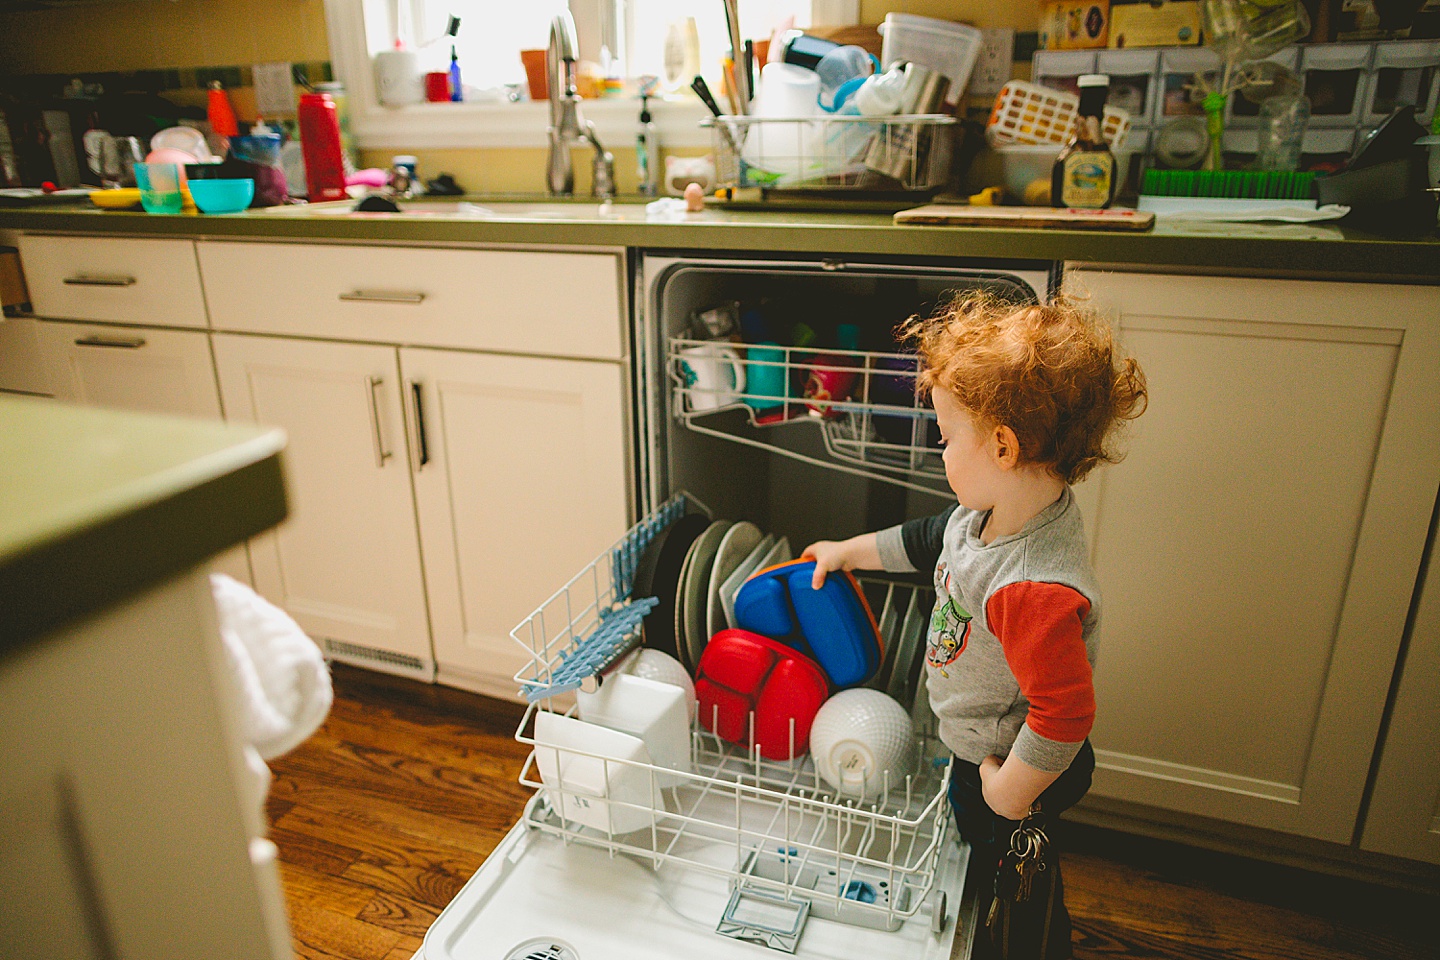 Toddler unloading dishwasher